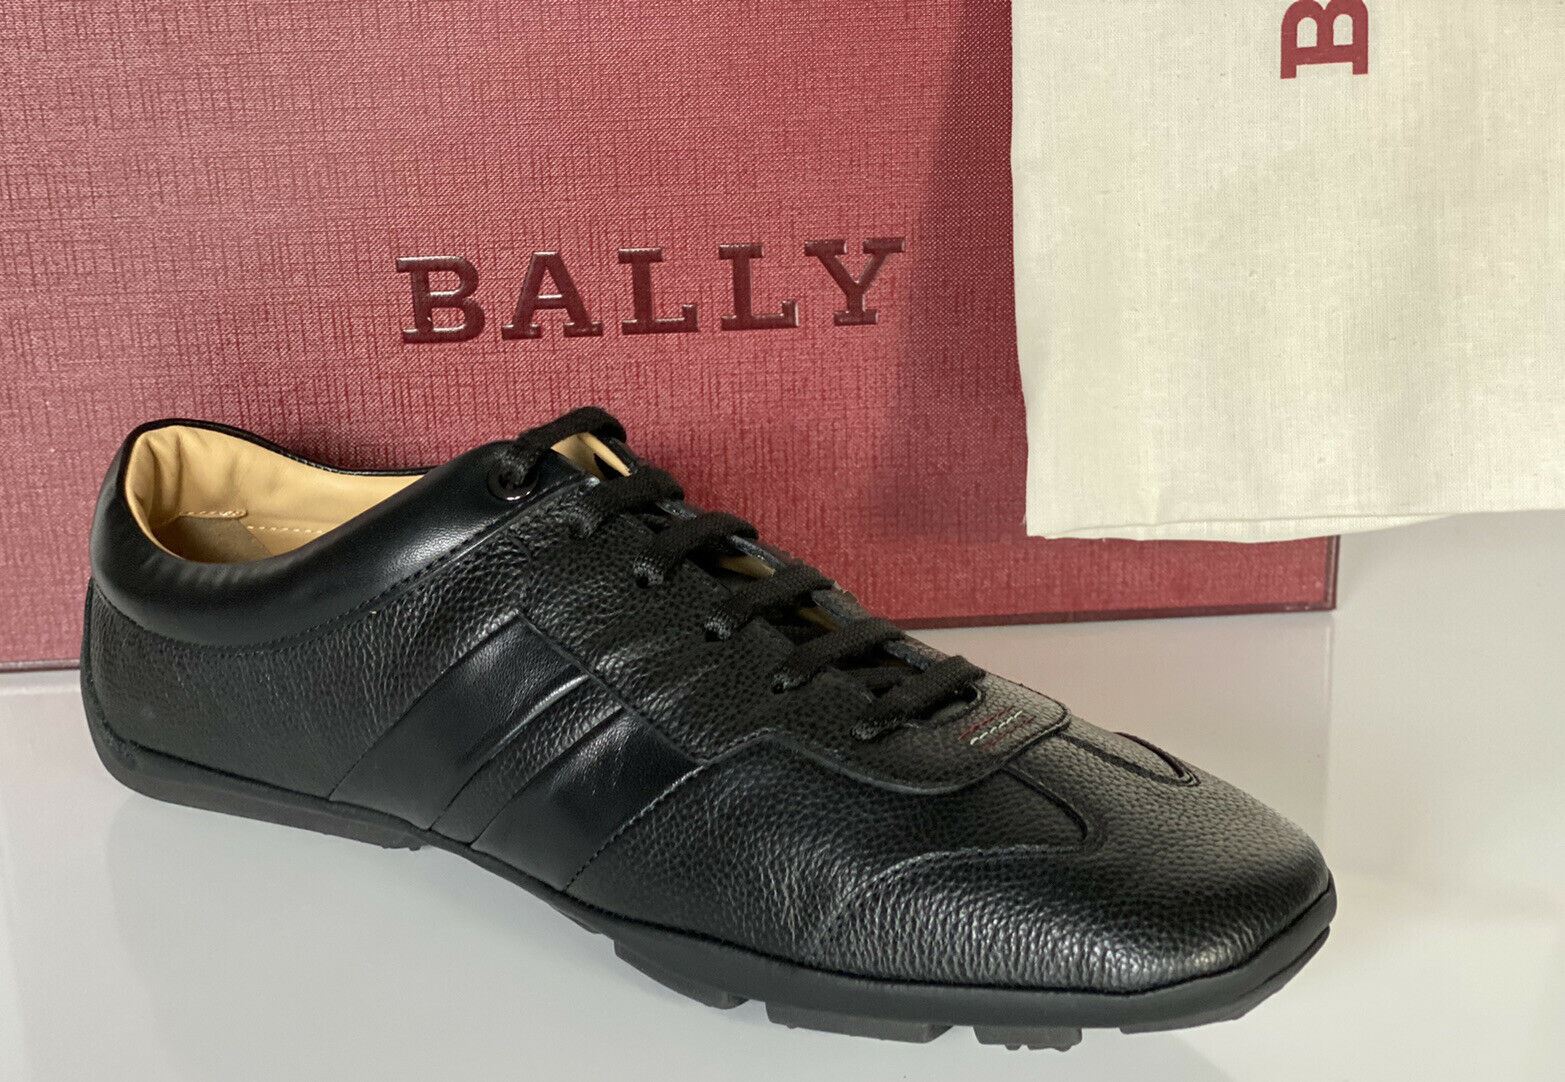 NIB Bally Primer Mens Bovine Embossed Leather Sneakers Black 10 EEE US 6234861